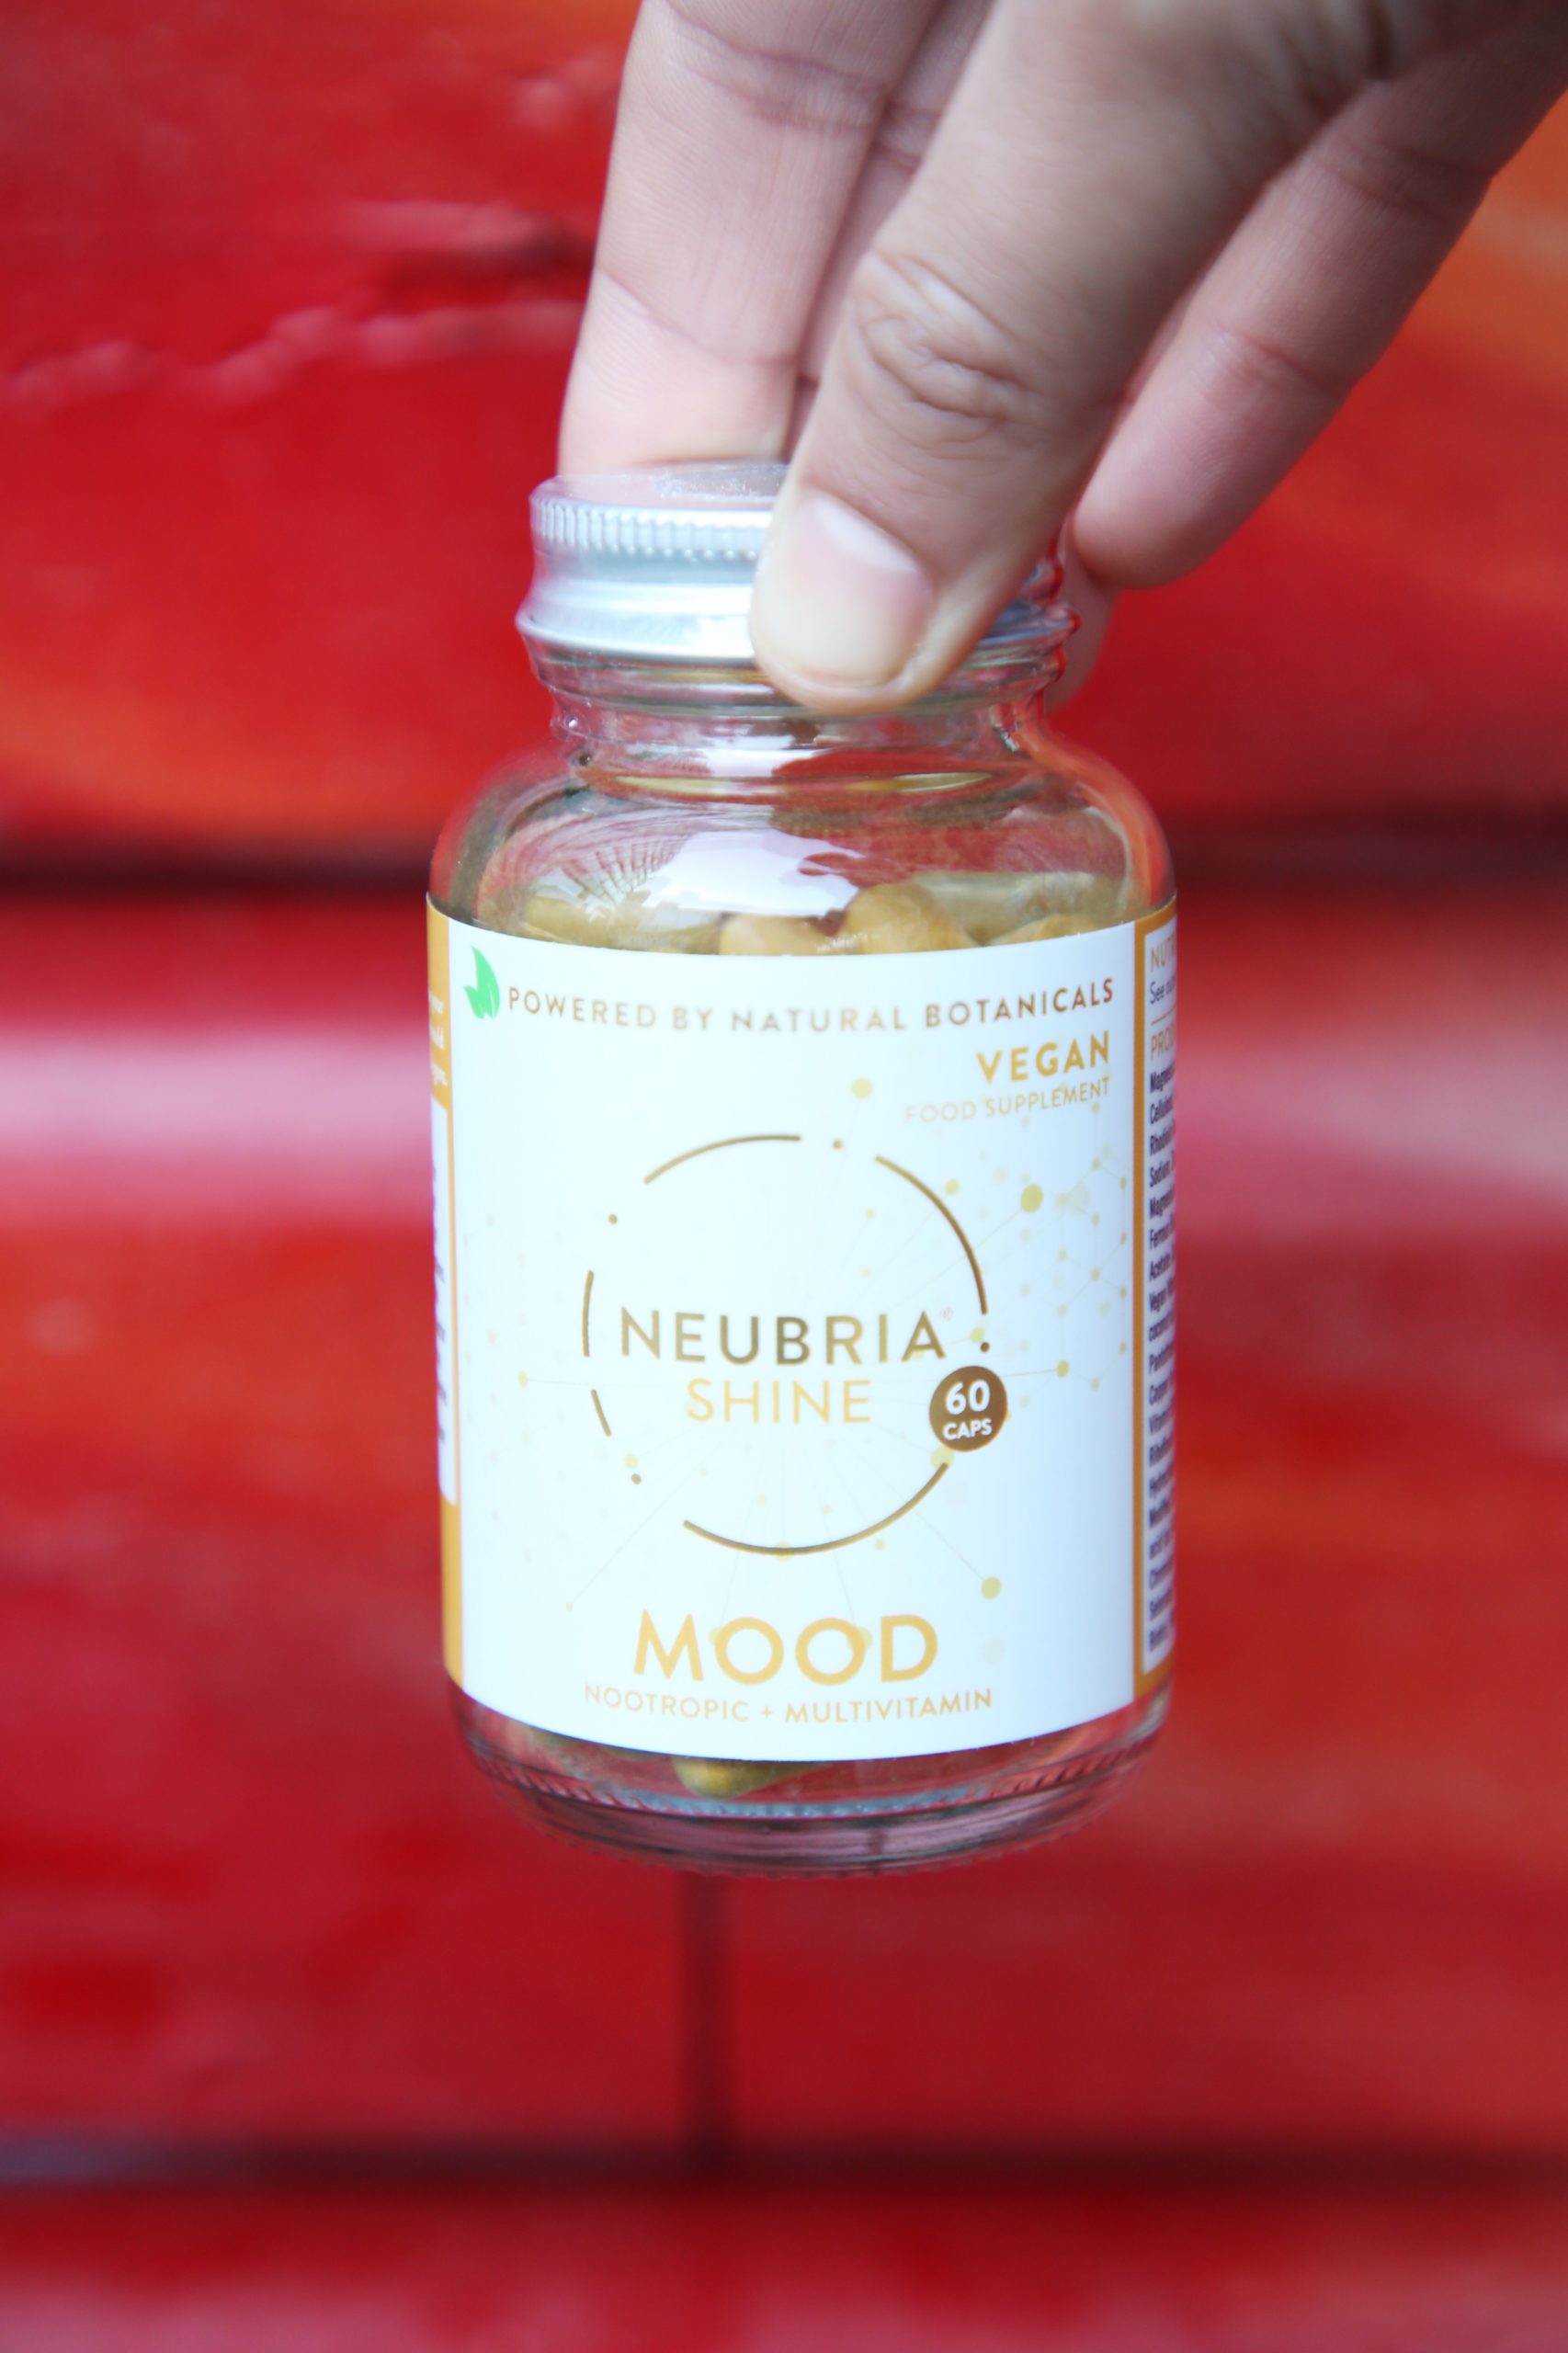 <img src="neubria.jpg" alt="neubria shine mood supplements"/> 